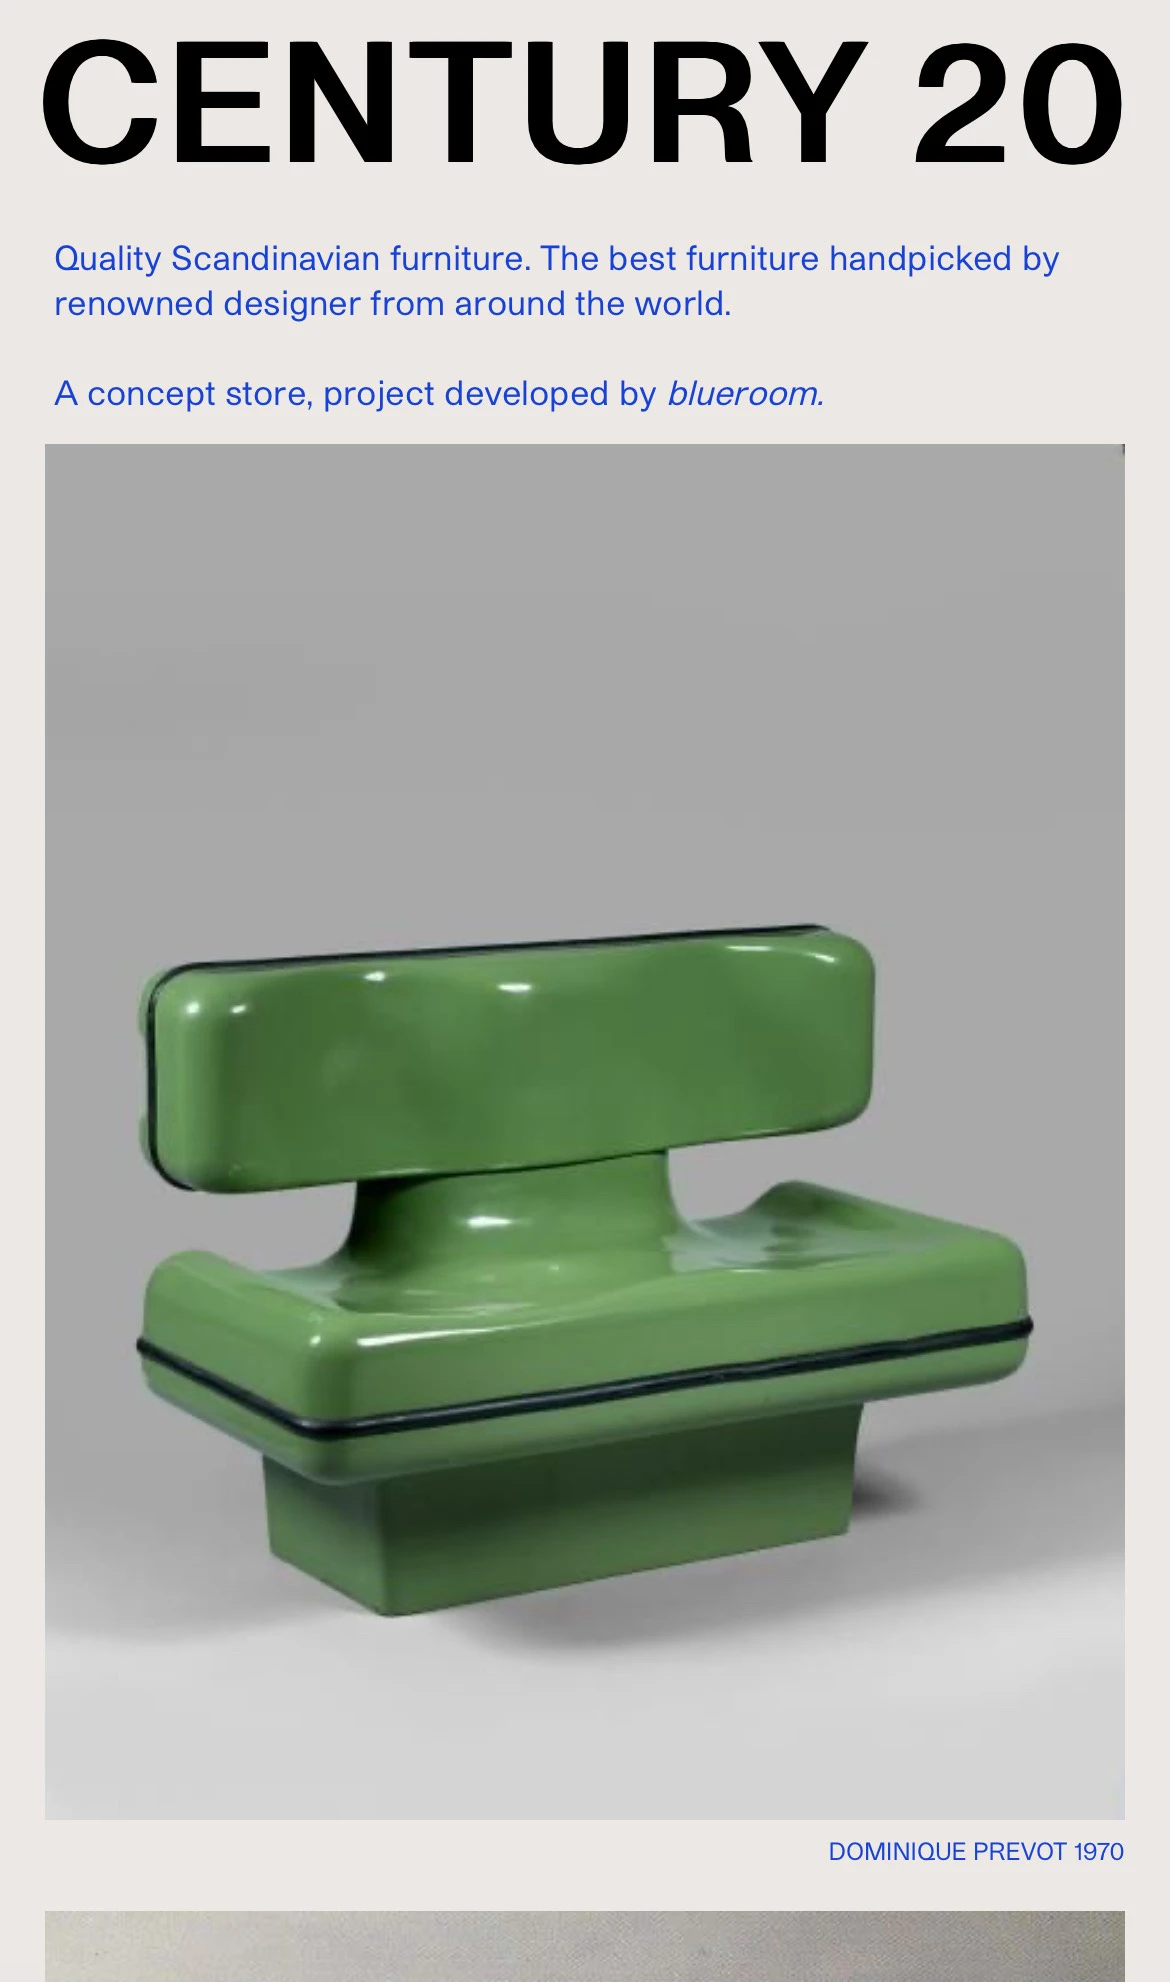 Concept Furniture